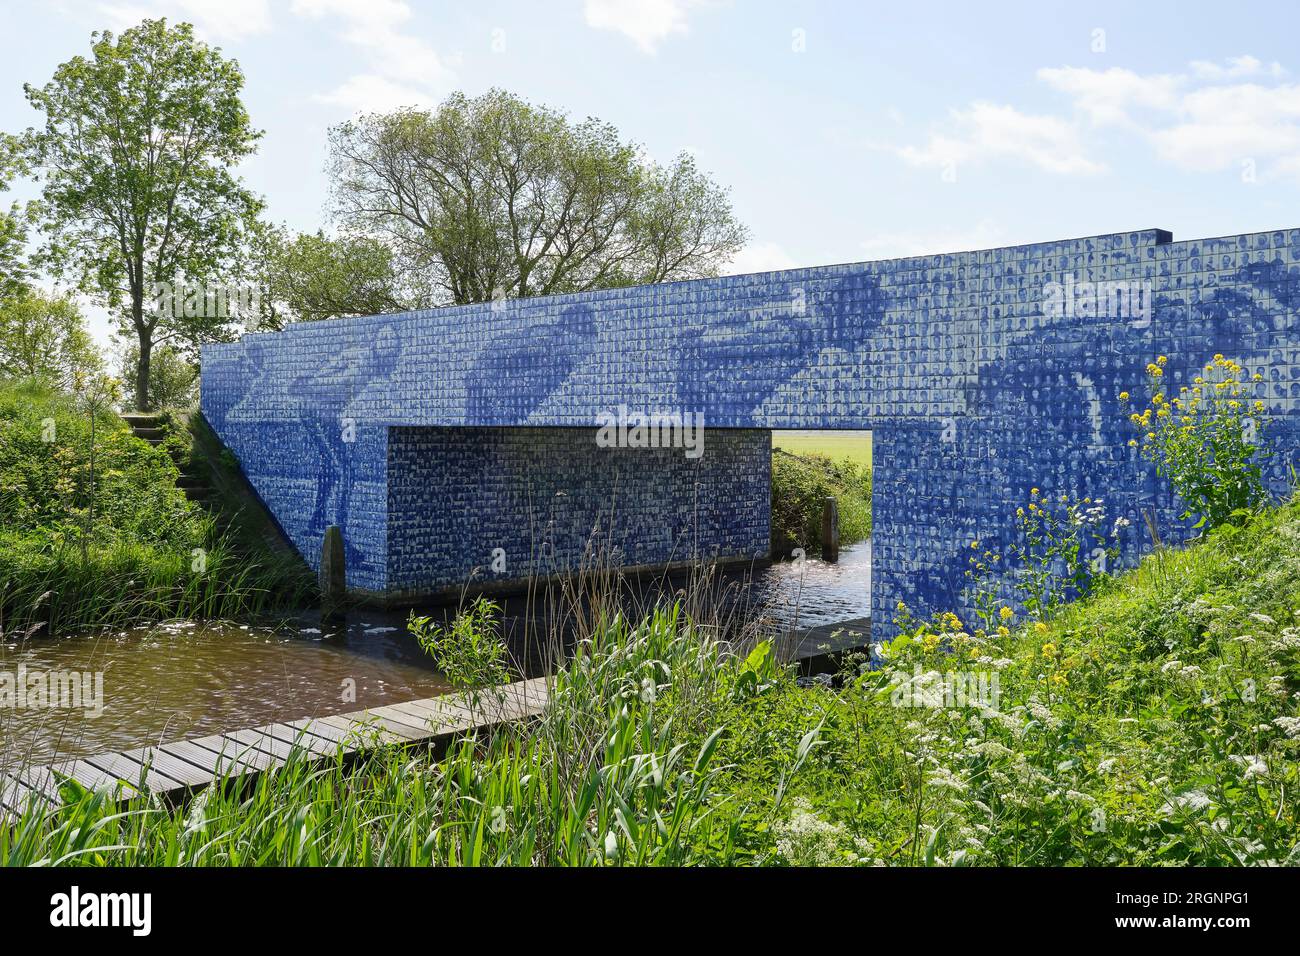 Ammira l'ElfstedenMonument Tegeltjesbrug a Gytsjerk. Un mosaico fotografico dei partecipanti al famoso tour di pattinaggio di Elfstedentocht in Frisia. Foto Stock